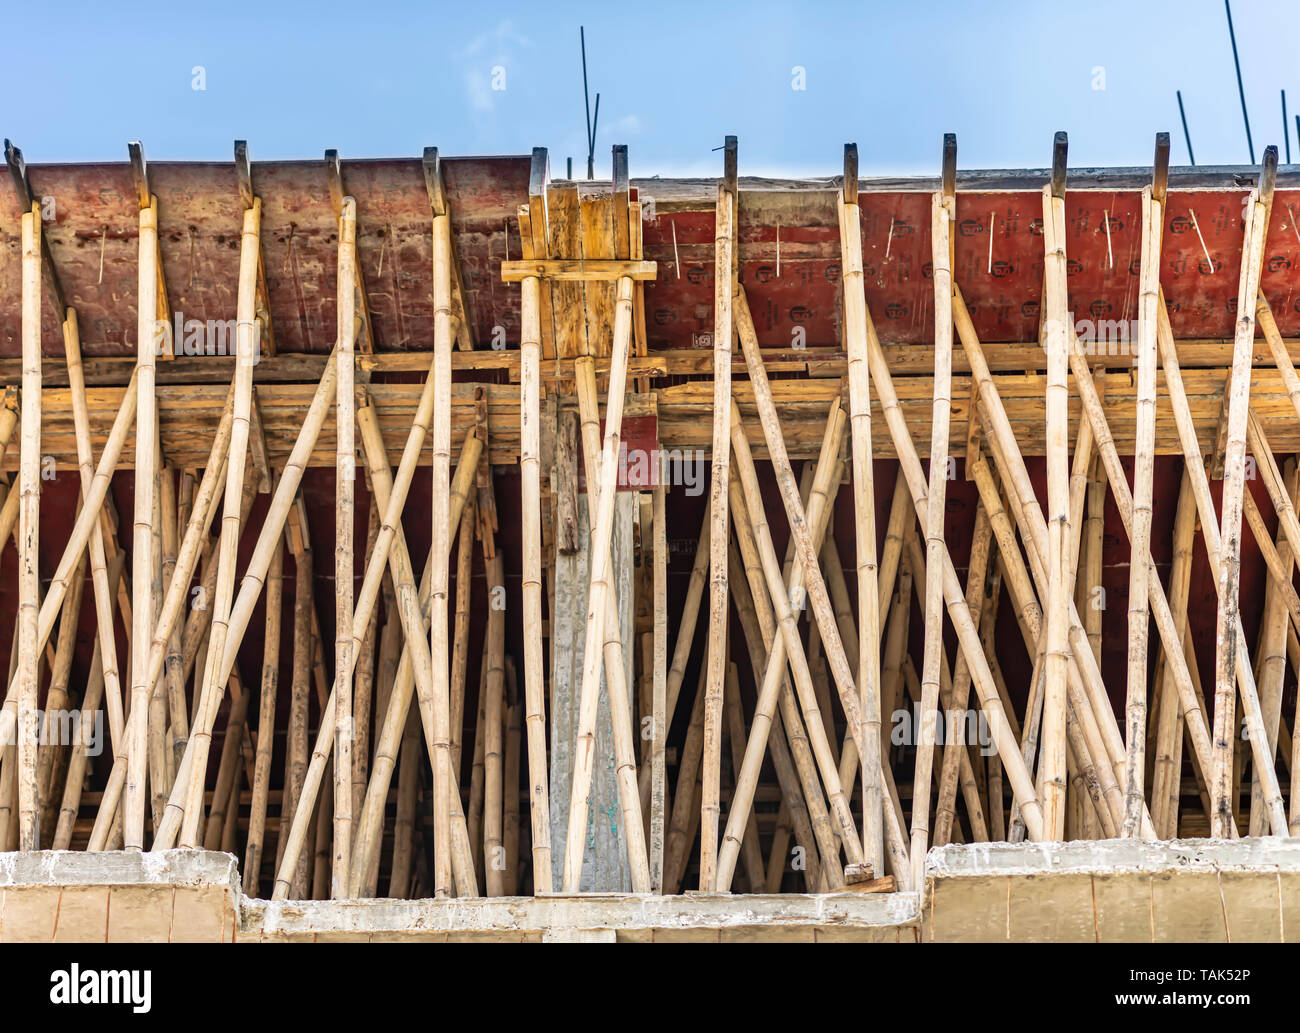 Ein Bambus Gerüst verwendet eine verstärkte Zement Beton Dach Tafel zu unterstützen. Die neu gegossen Dach ist nach links für ca. 7 Tage zu kurieren. Indien. Stockfoto